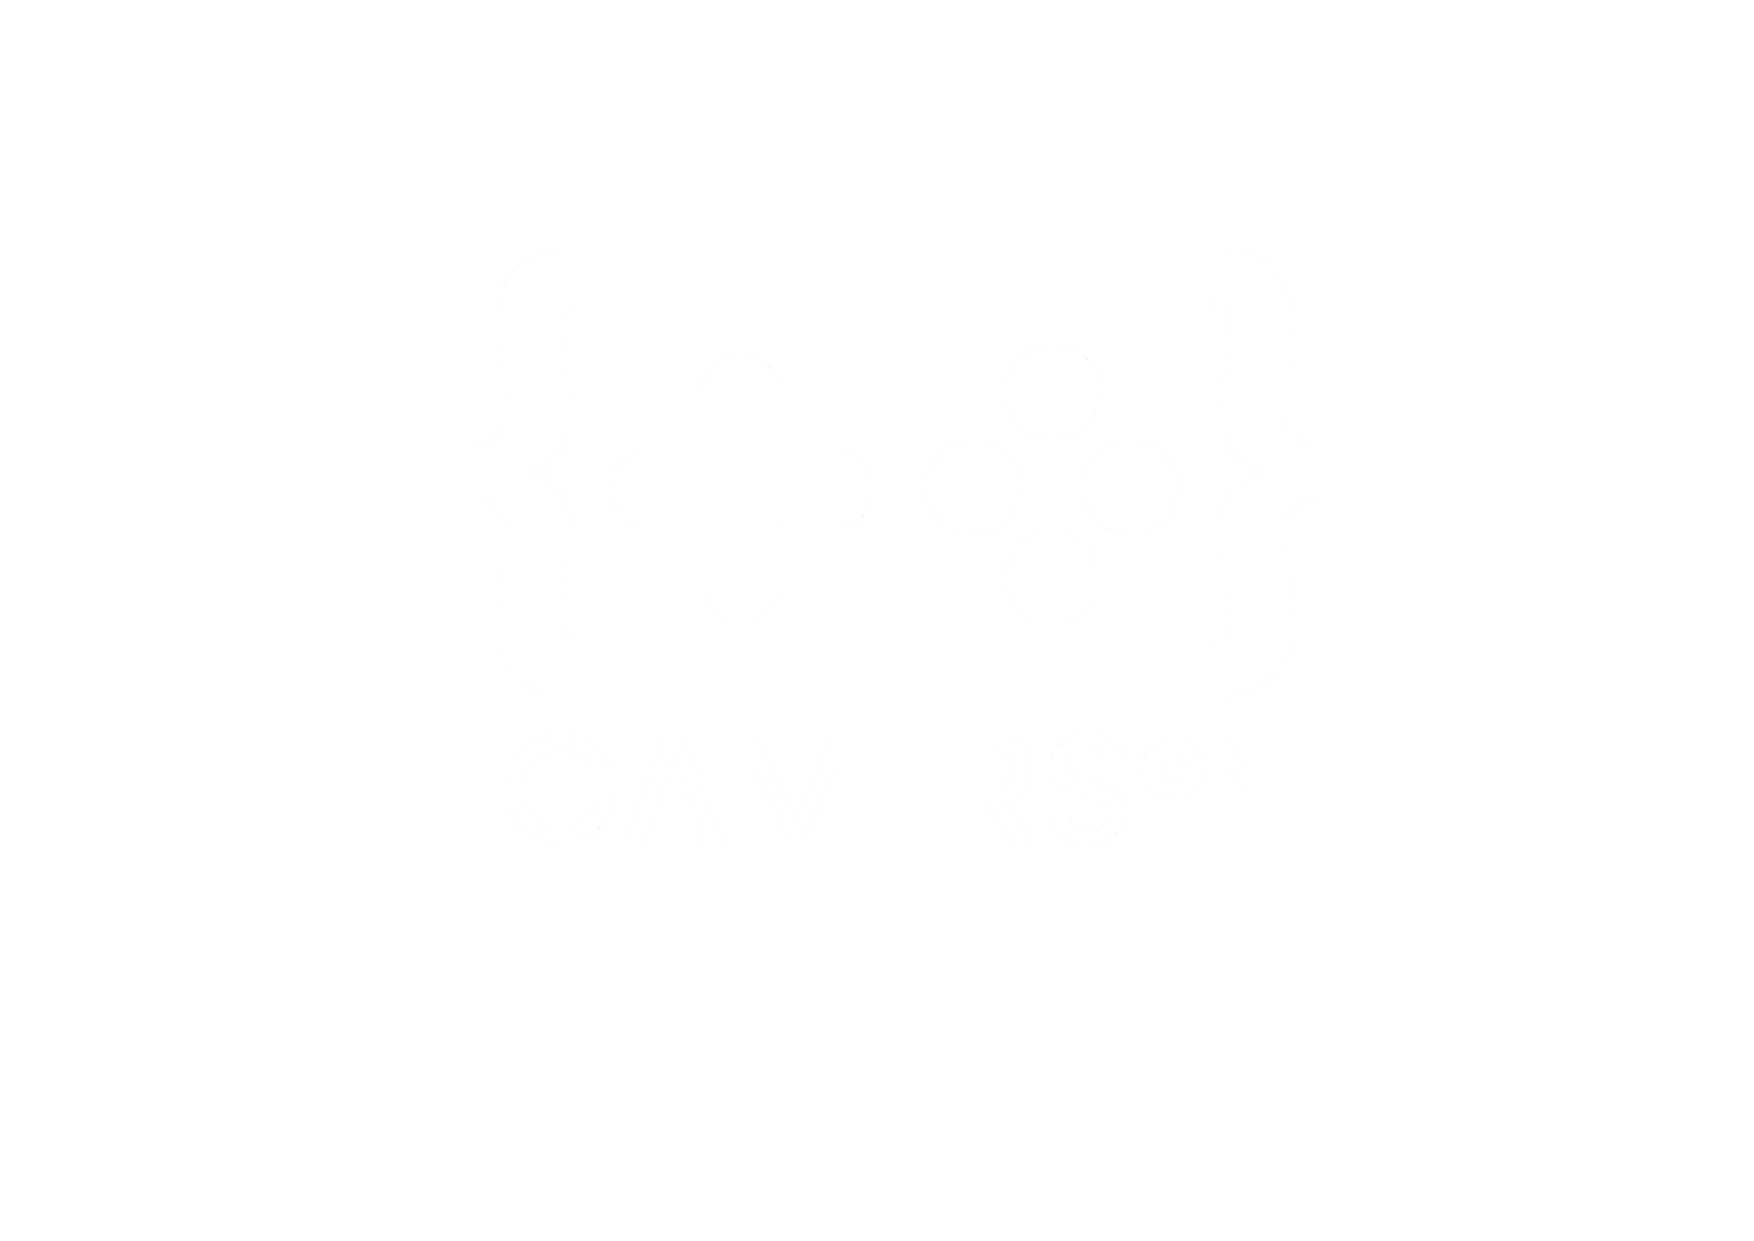 rediseño-logotipo-gamerson_Mesa de trabajo 1 copia 5